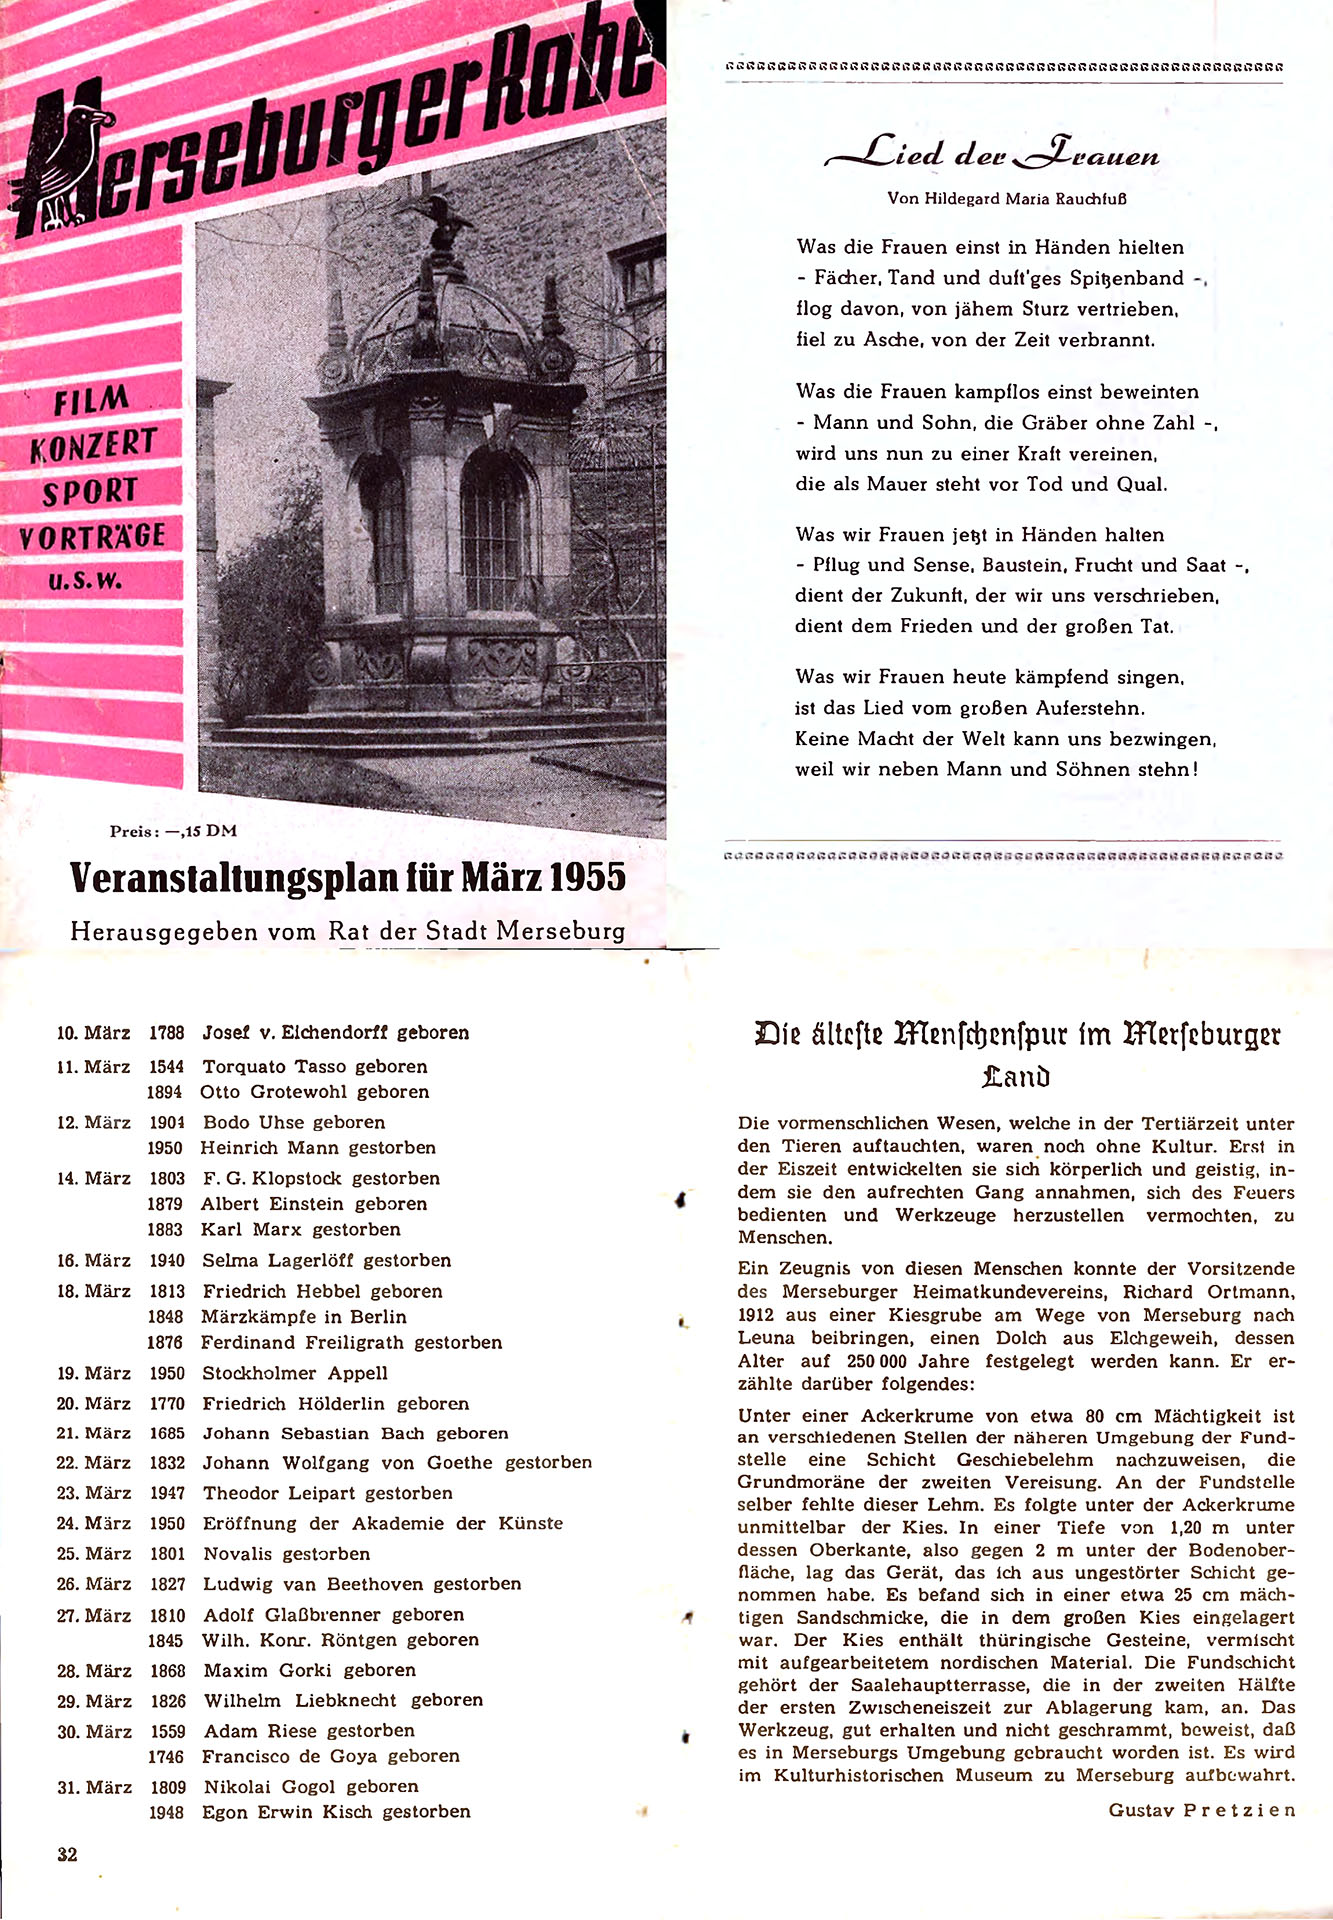 Veranstaltungsplan für März 1955 - Pretzien, Gustav